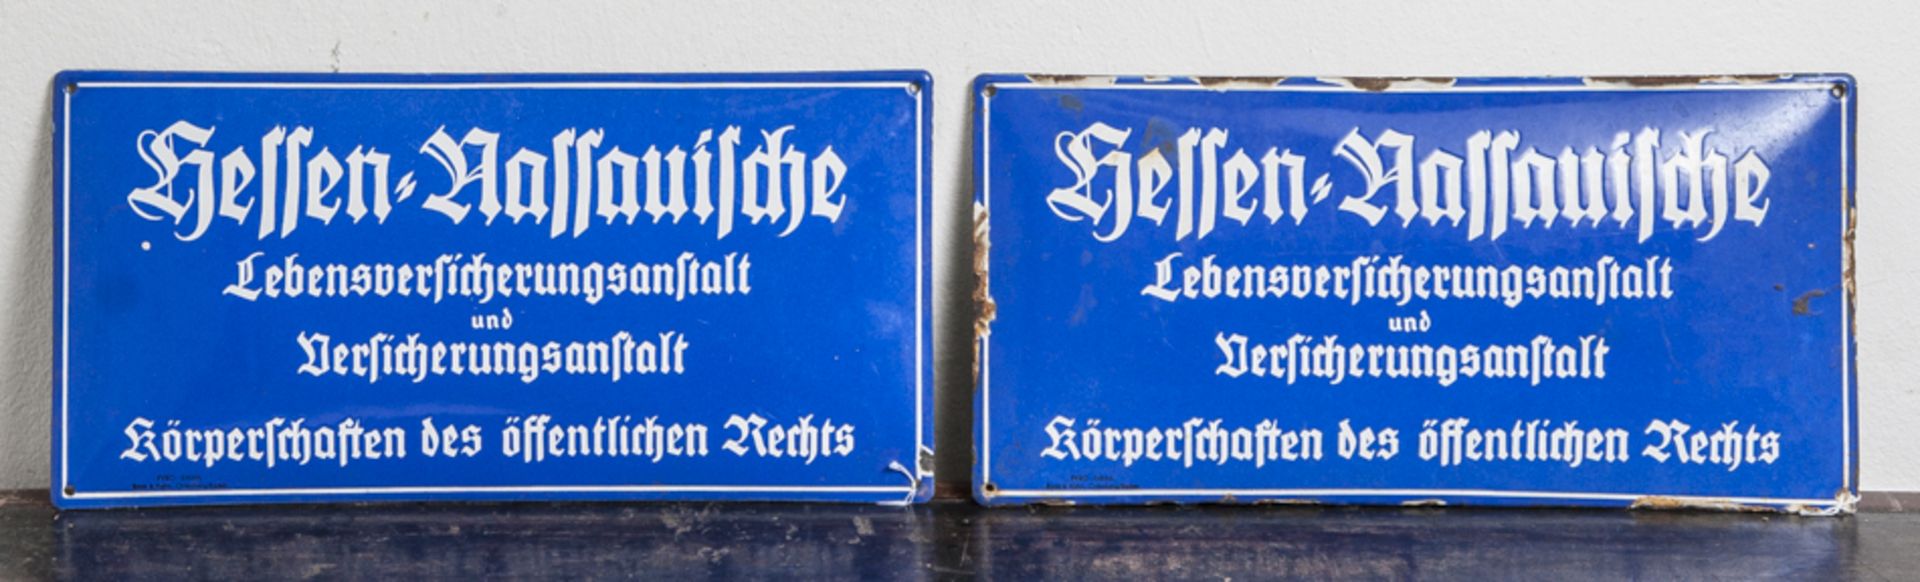 Zwei Emailschilder, gewölbt, auf blauem Grund - weisse Schrift "Hessen -